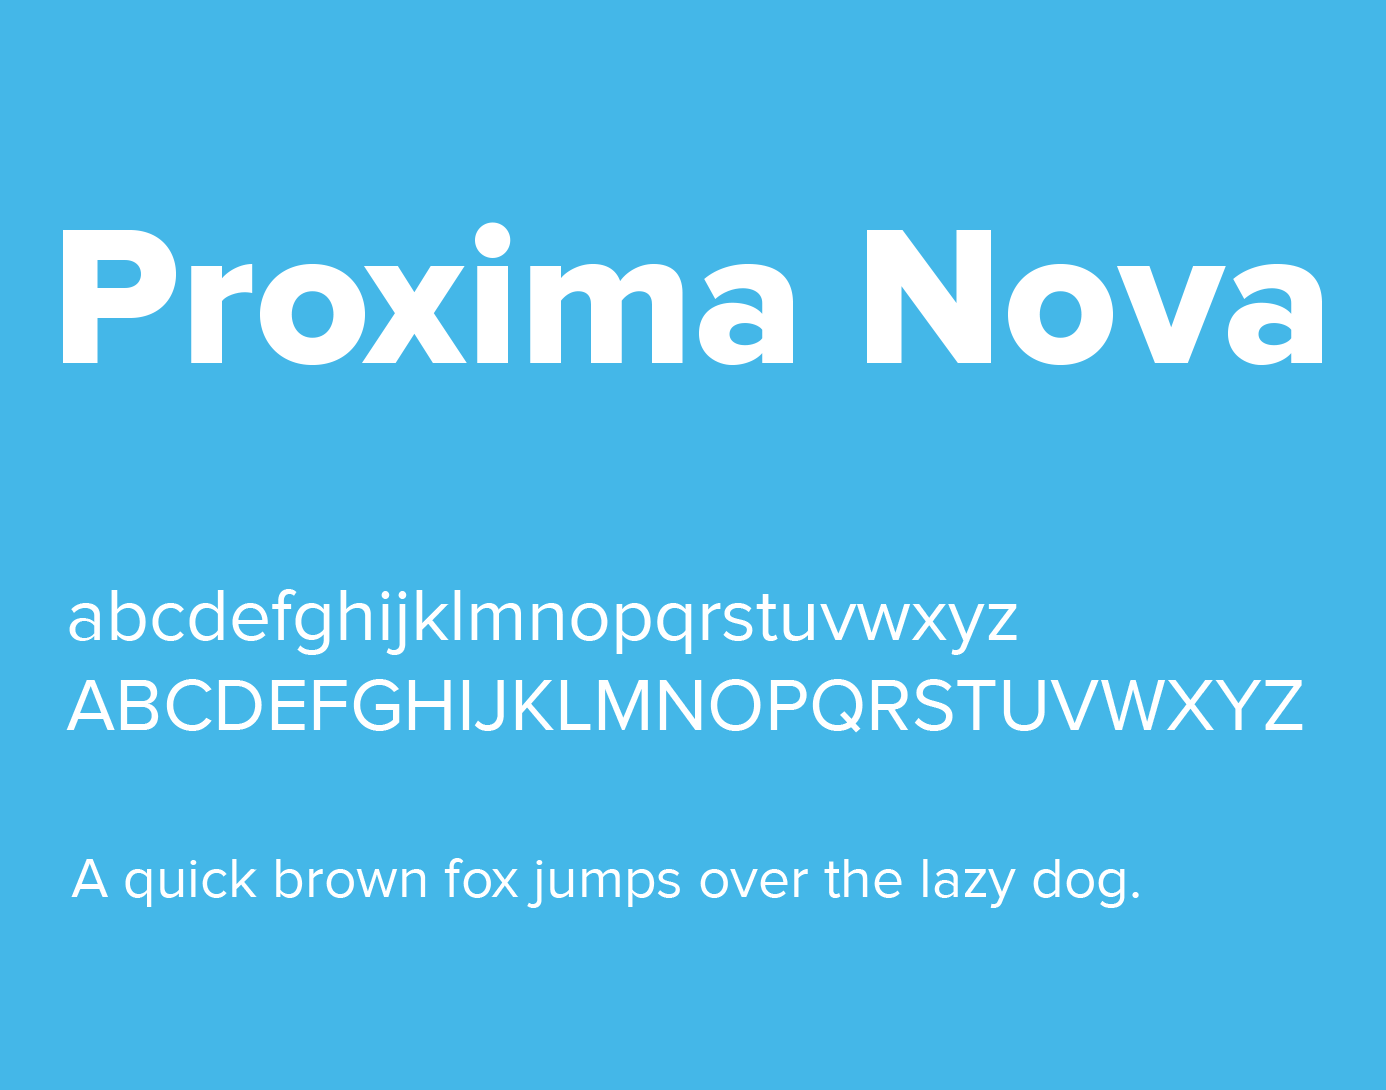 Download Proxima Nova Free Mac